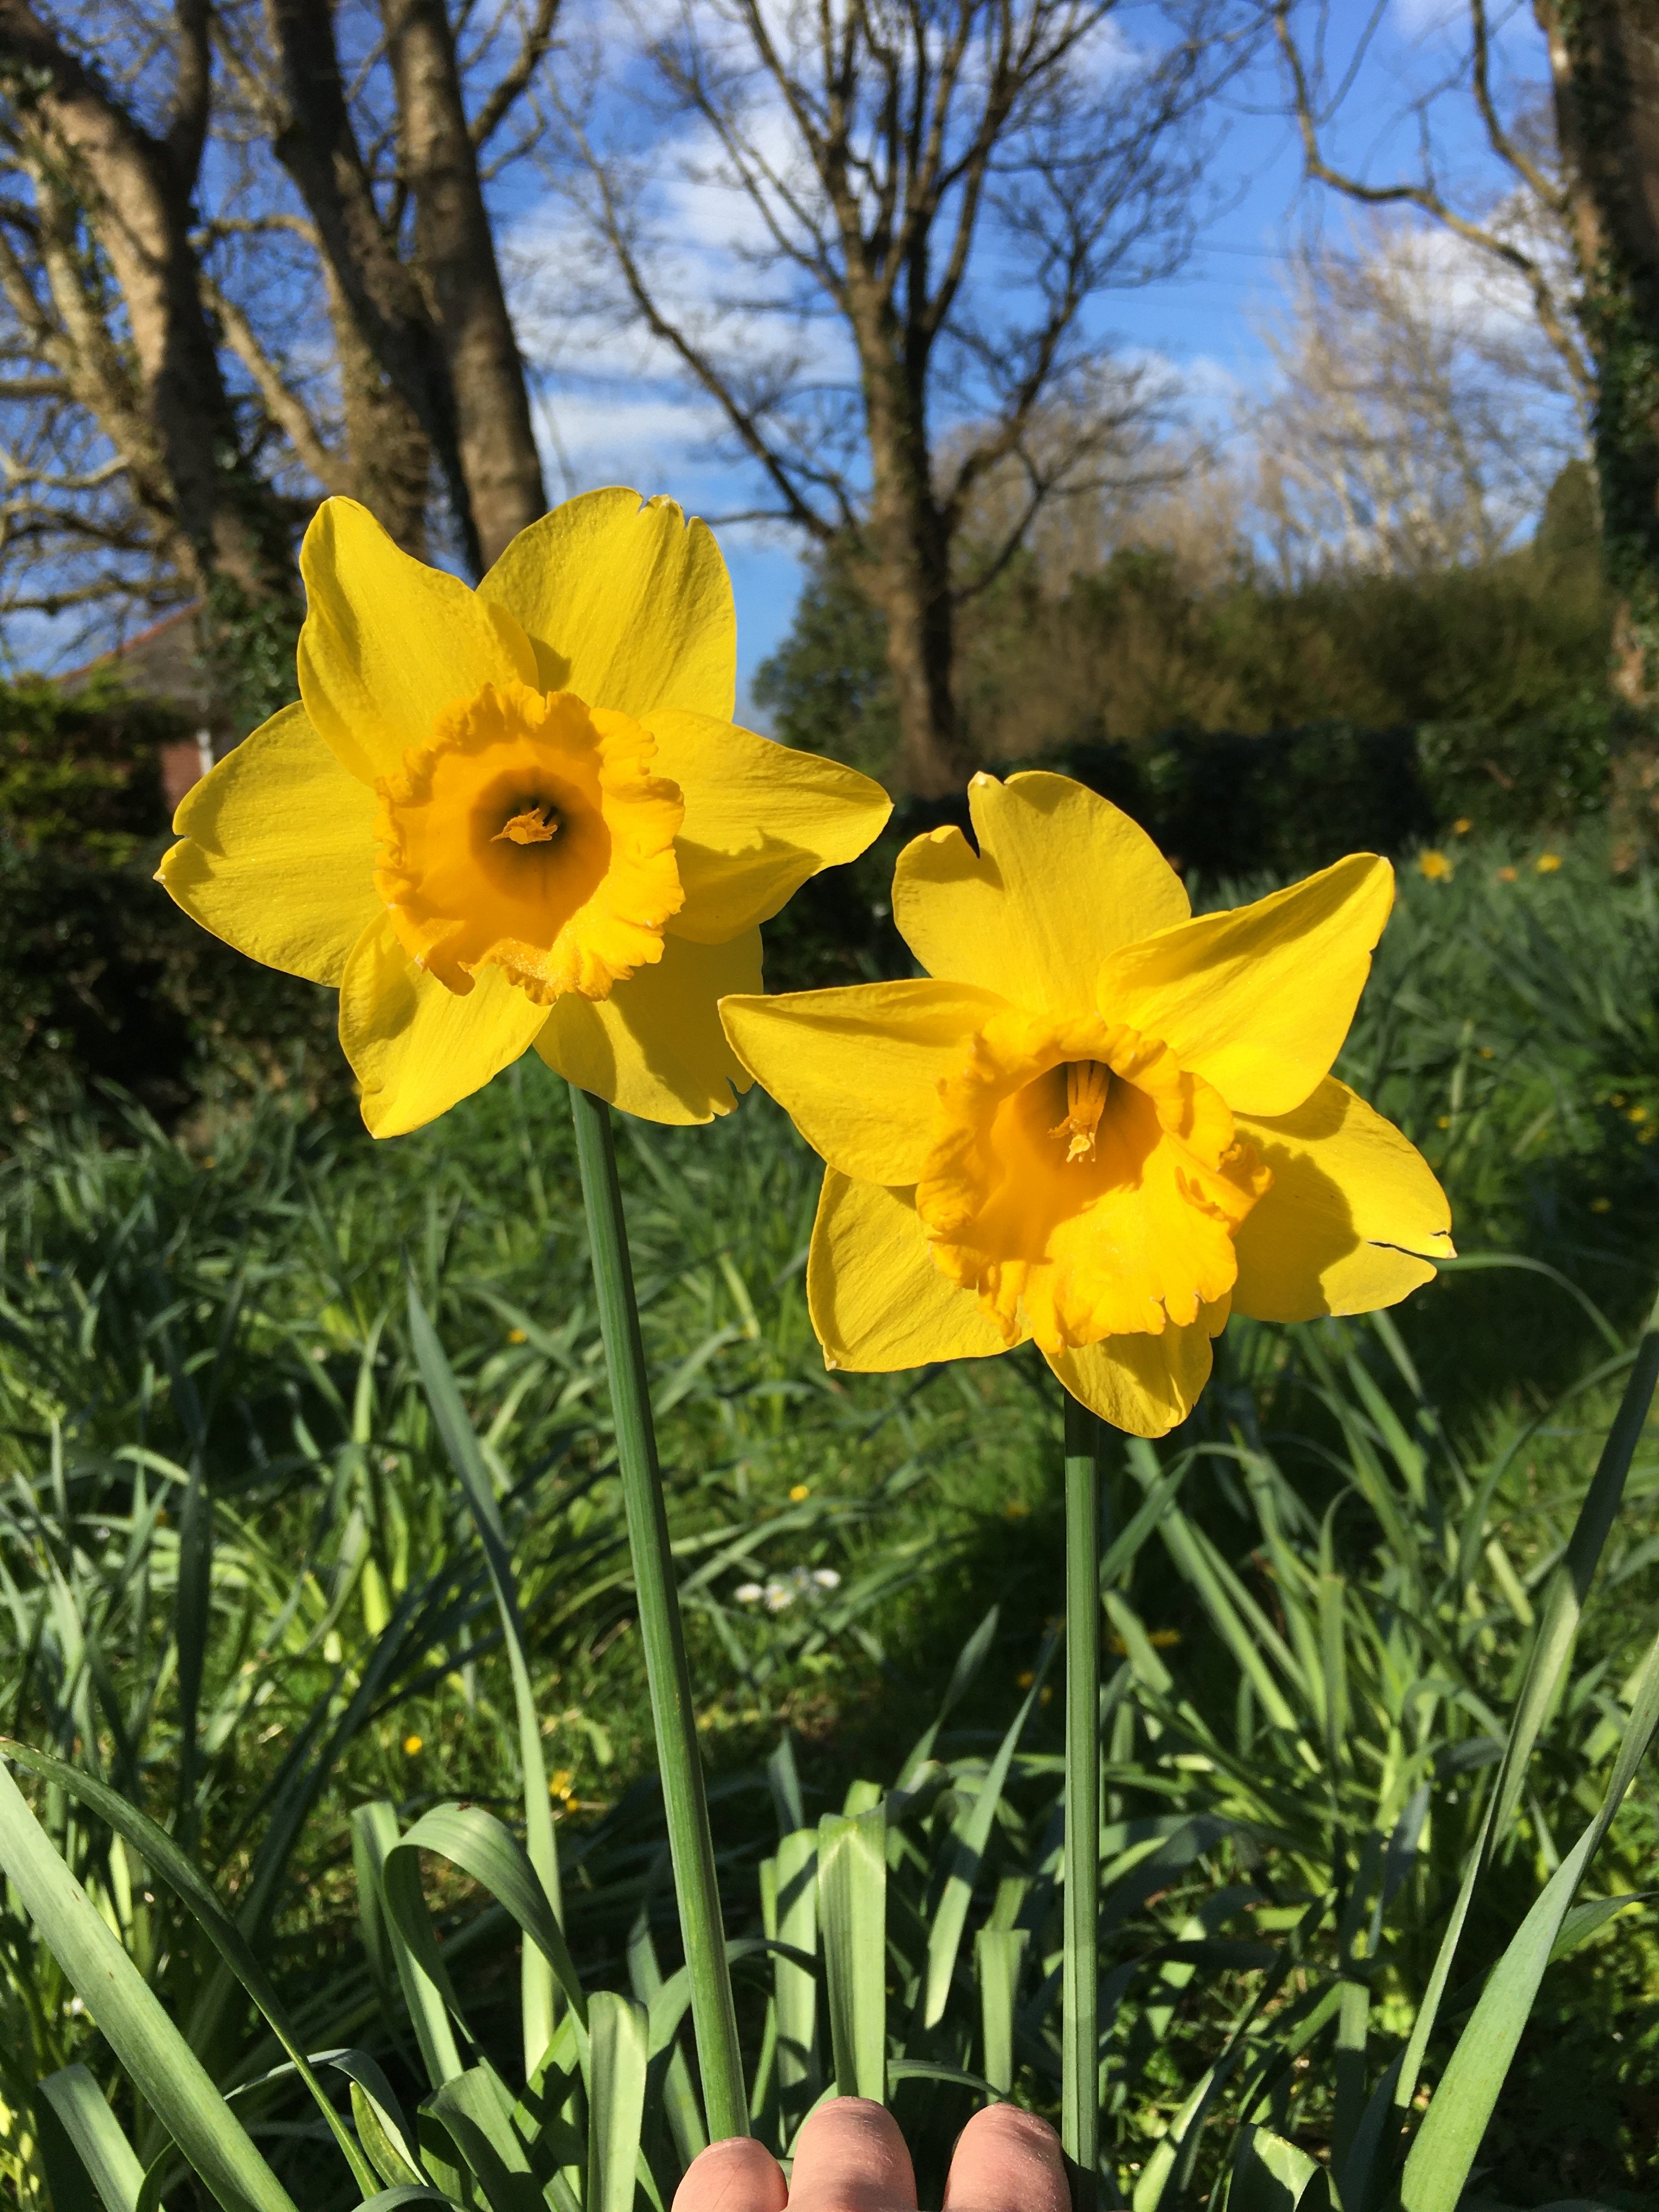 Digital Daffodil Day